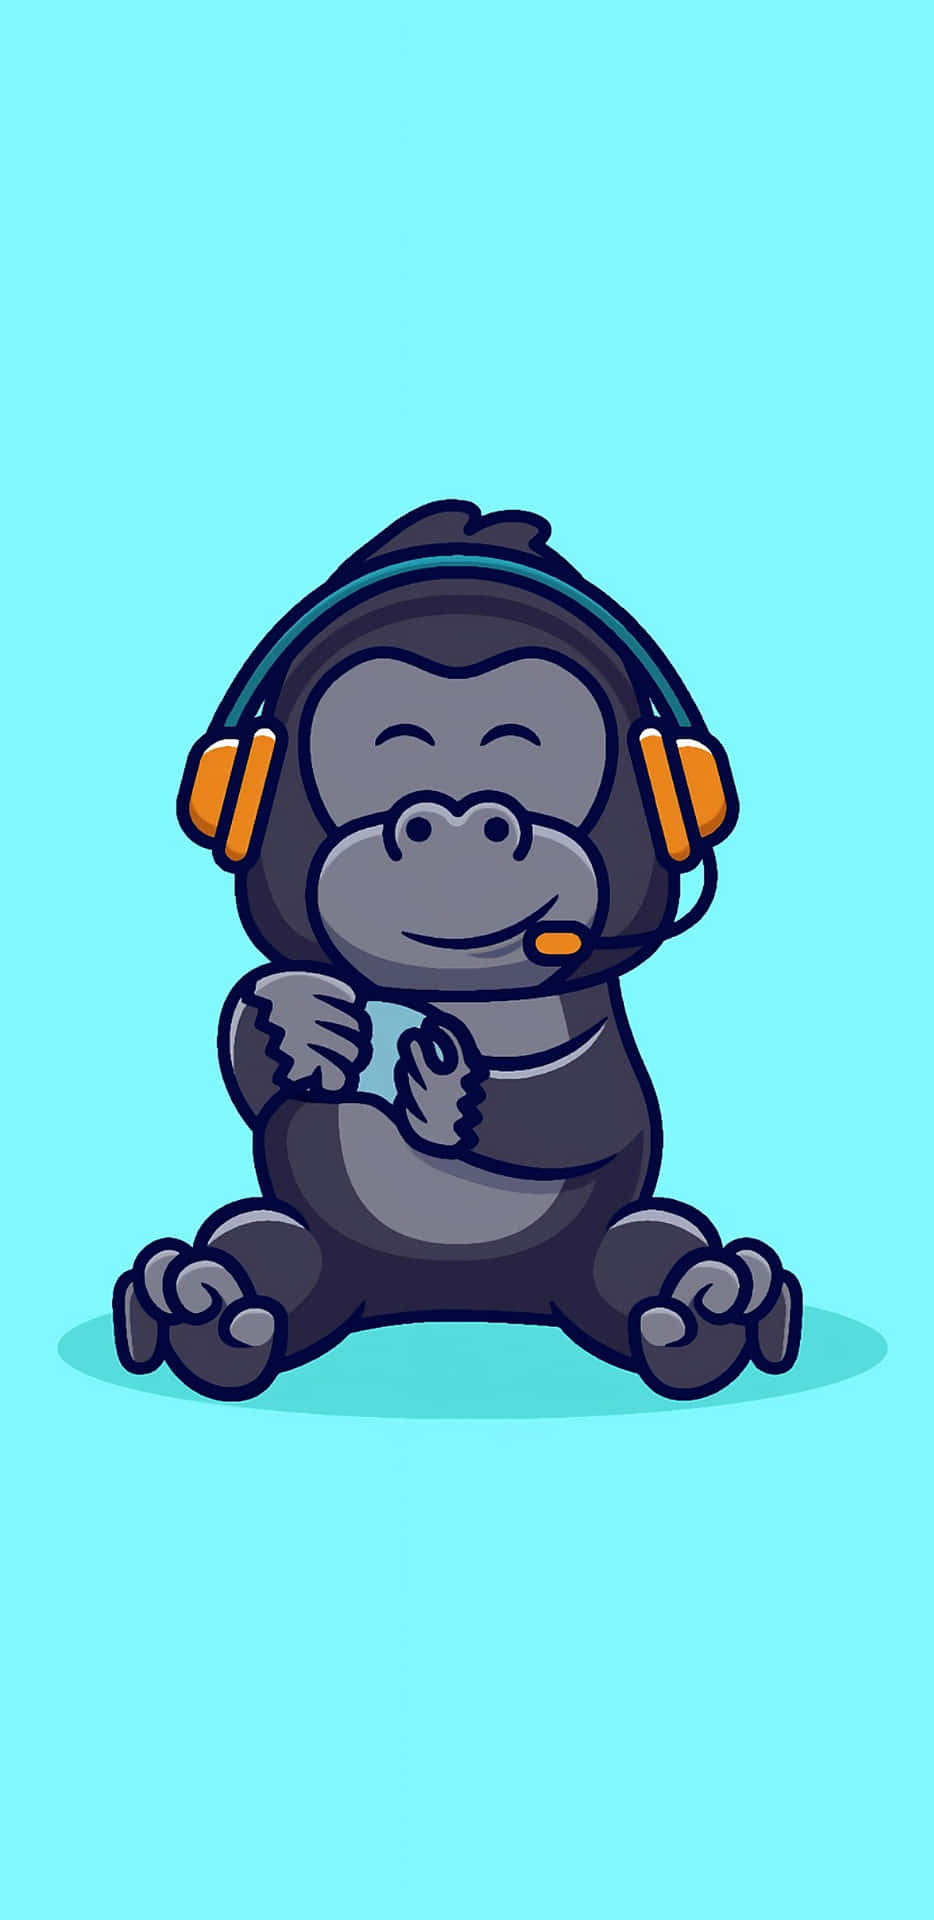 Pixel3 Xl Gorilla Hintergrund Mit Headset-illustration